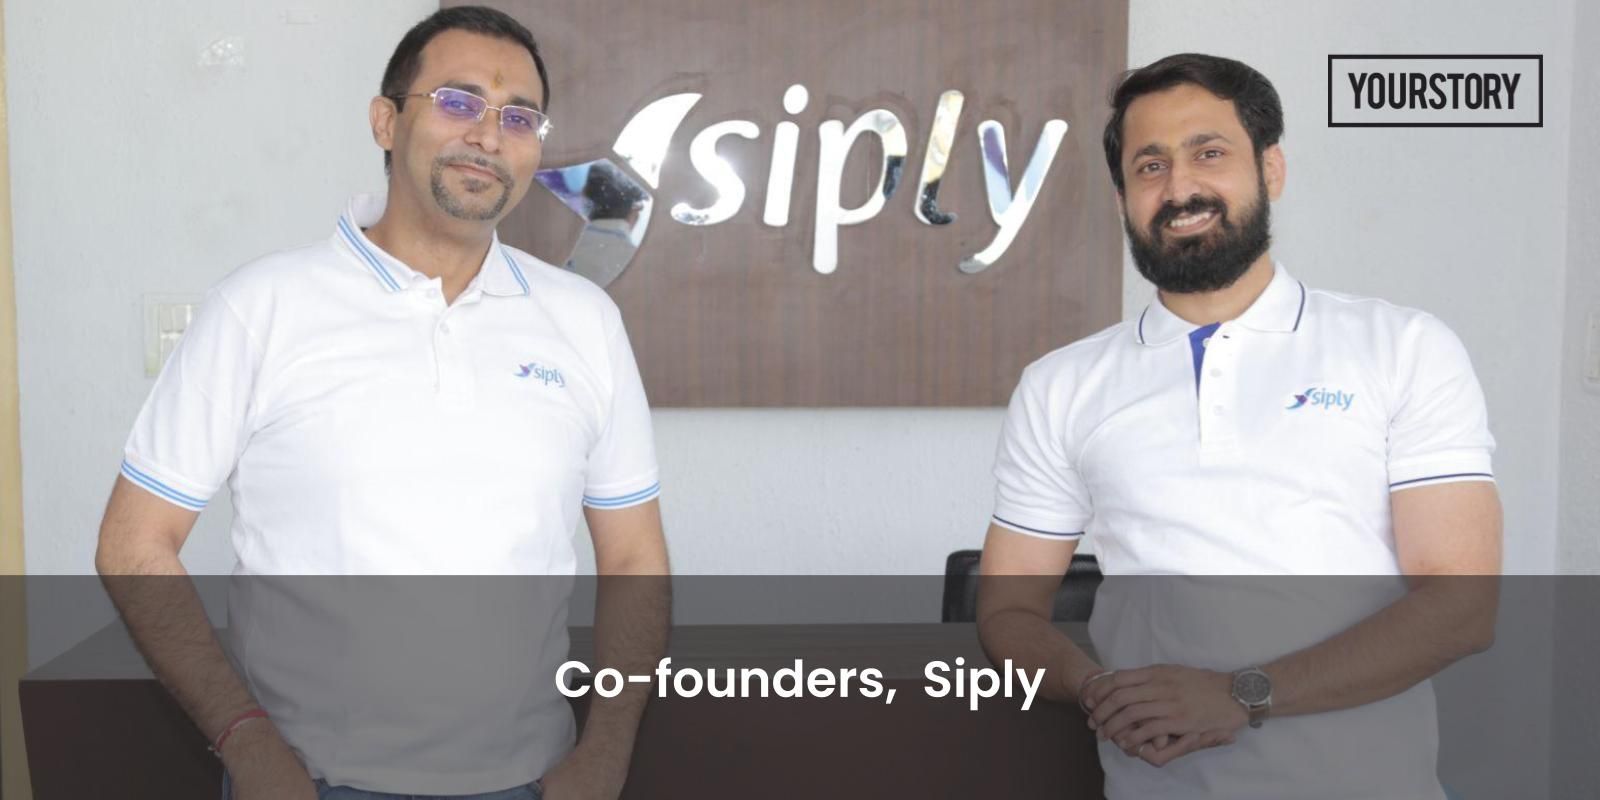 [Funding alert] Micro-savings platform Siply raises $3.2M in pre-Series A round